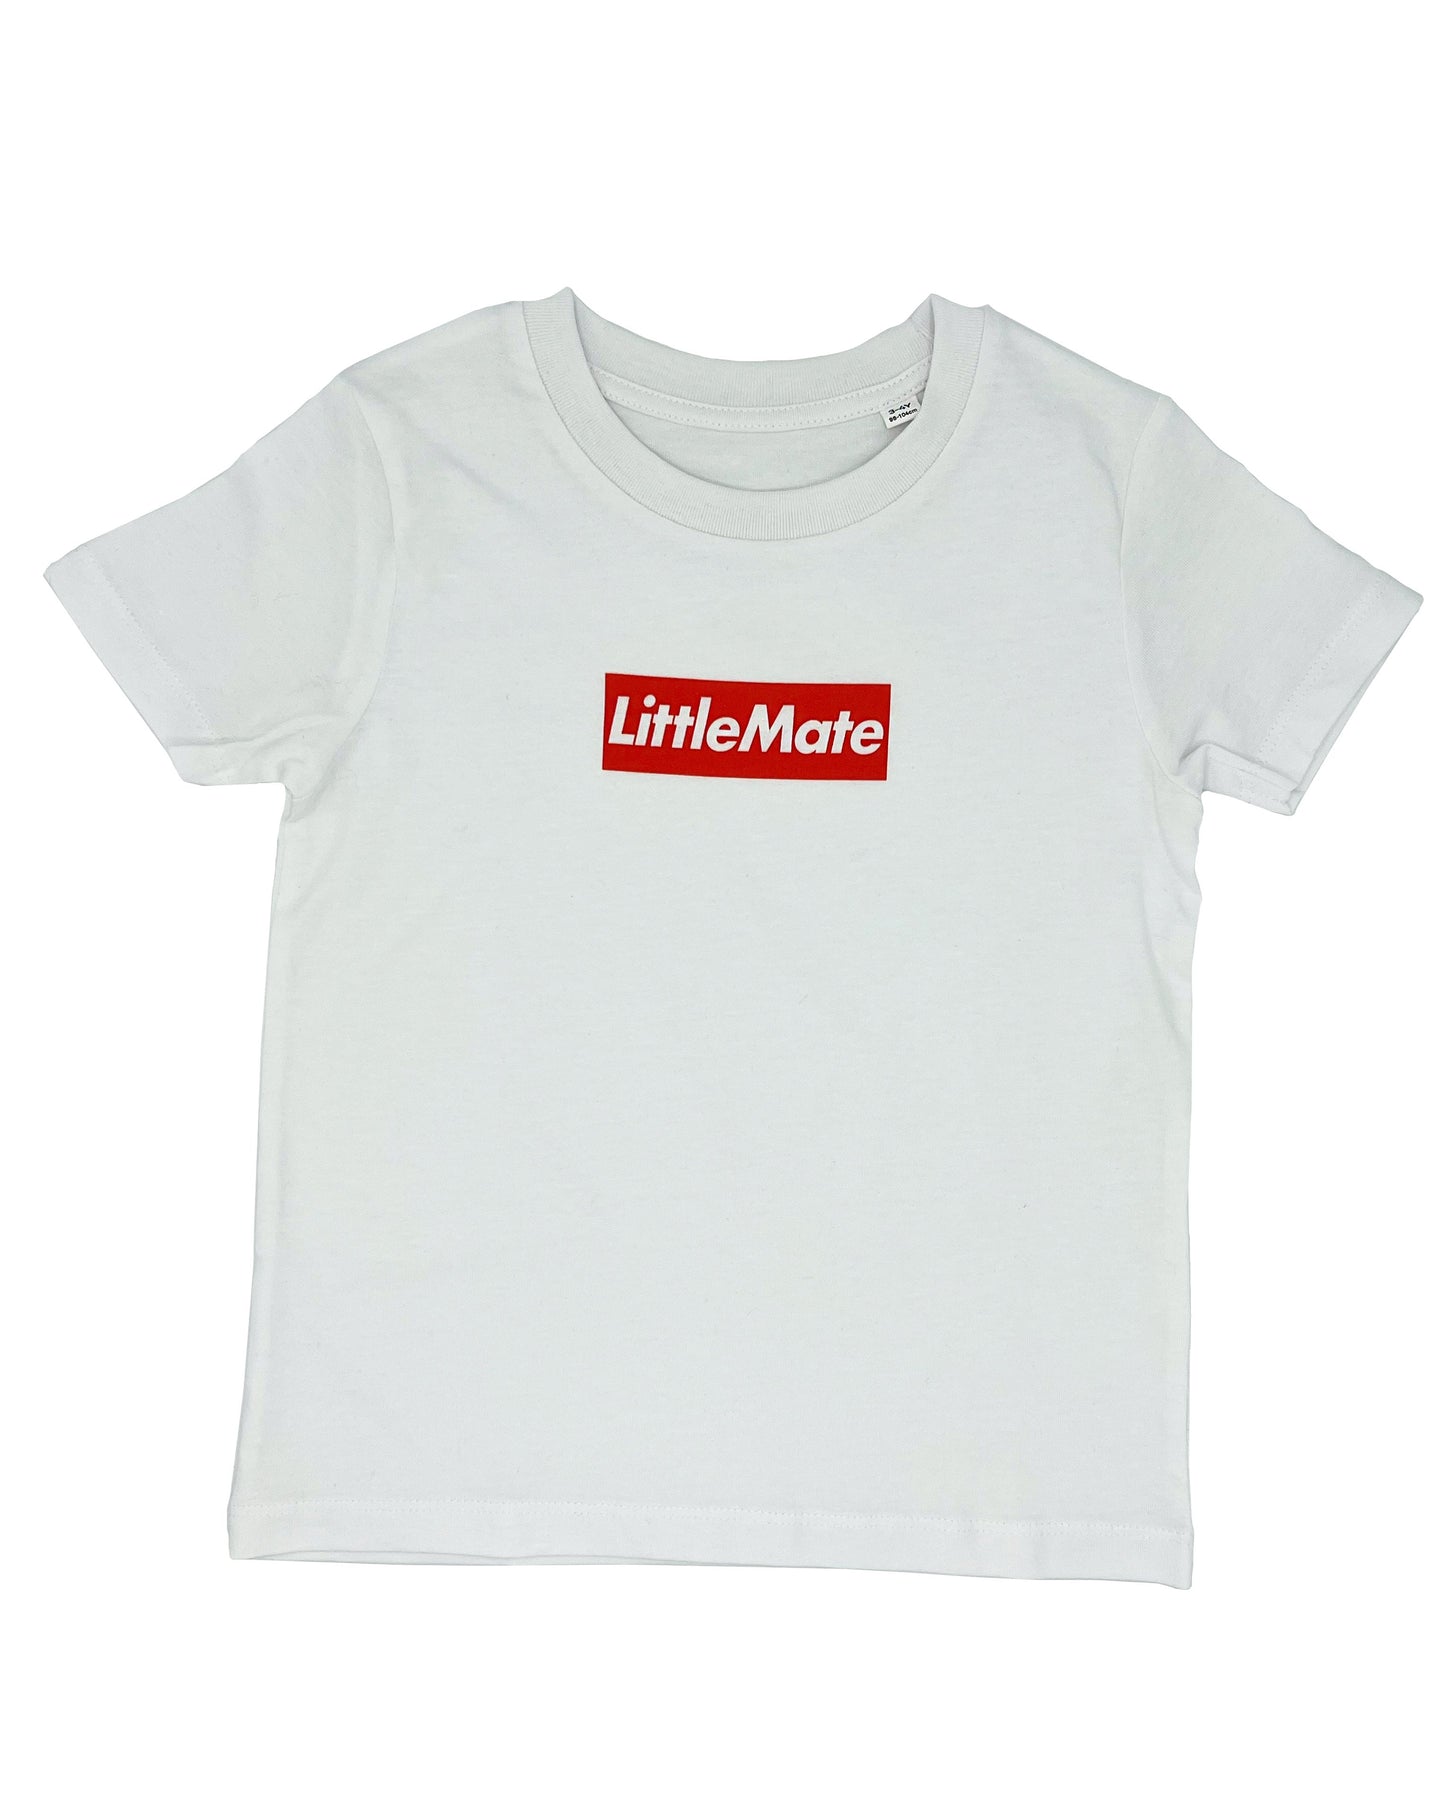 LITTLE MATE - Short Sleeve T Shirt - Little Mate Adventures